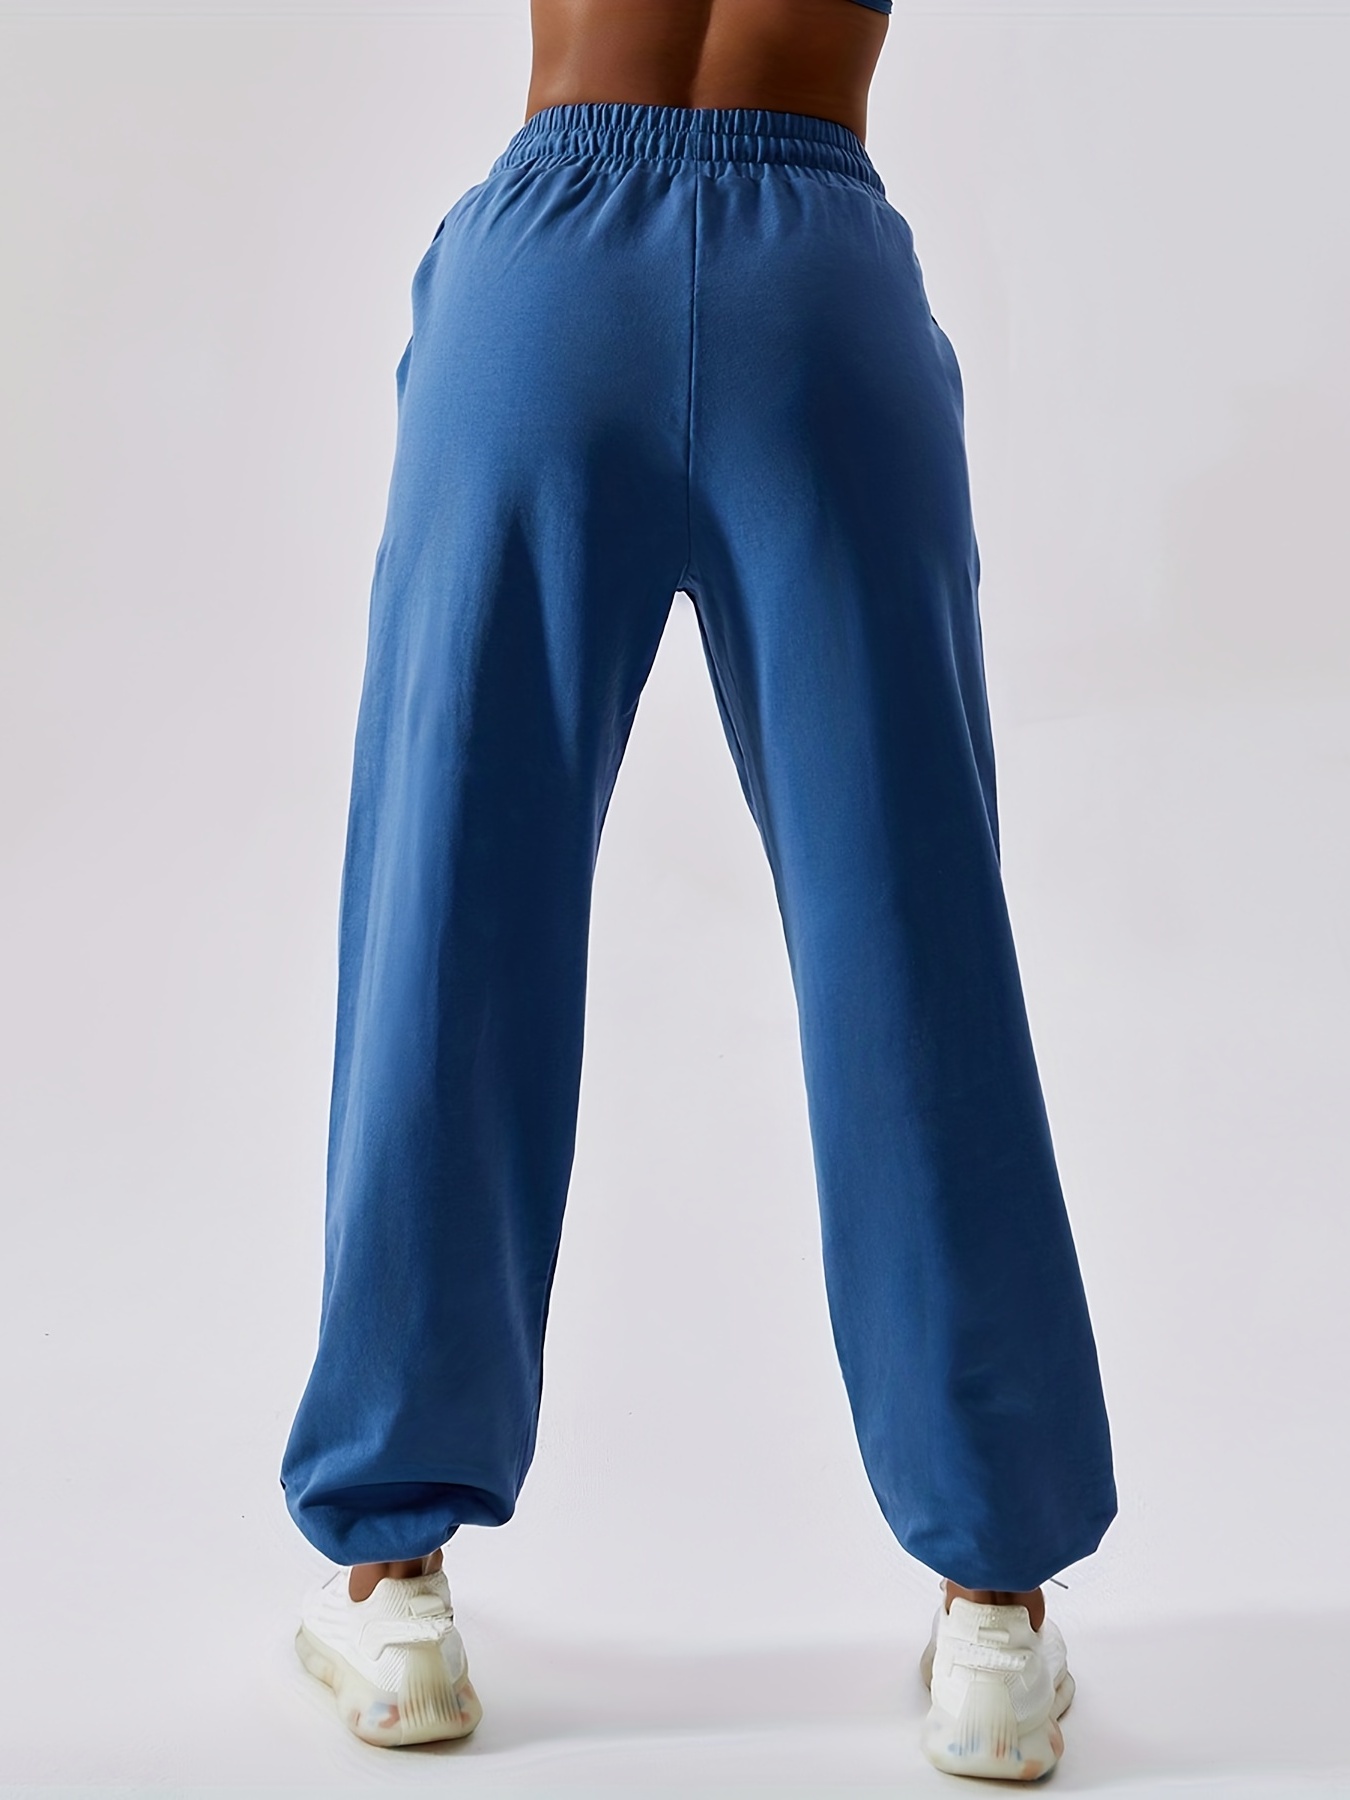 Comprar Pantalones de mujer Moda deportiva Color sólido Bolsillo con cordón  Pantalones de chándal casuales Pantalones